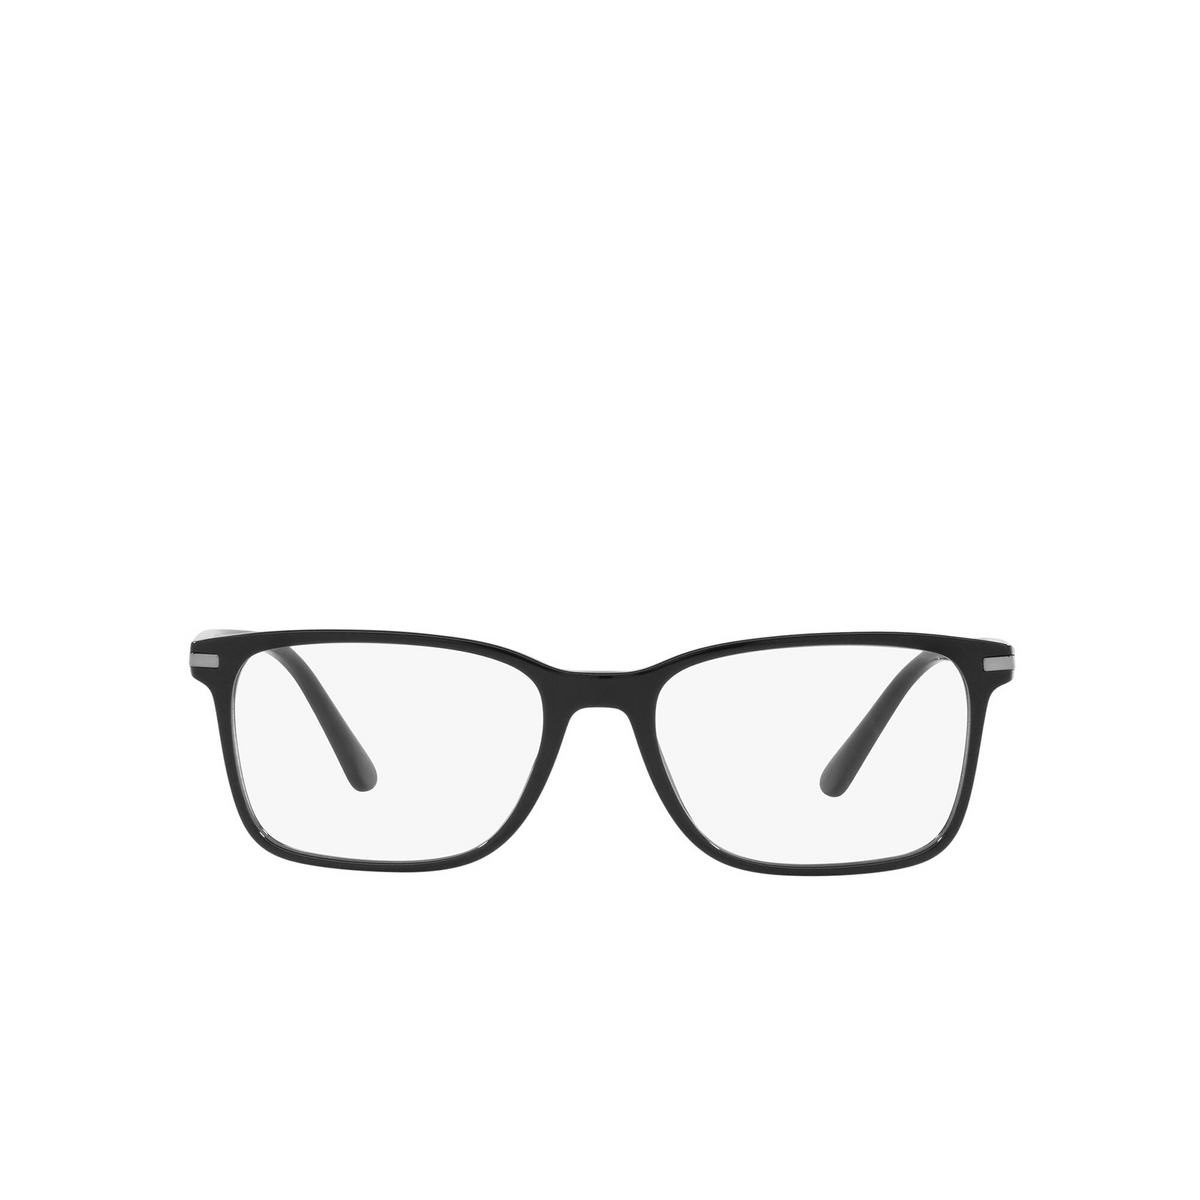 Prada® Square Eyeglasses: PR 14WV color Black 1AB1O1 - front view.